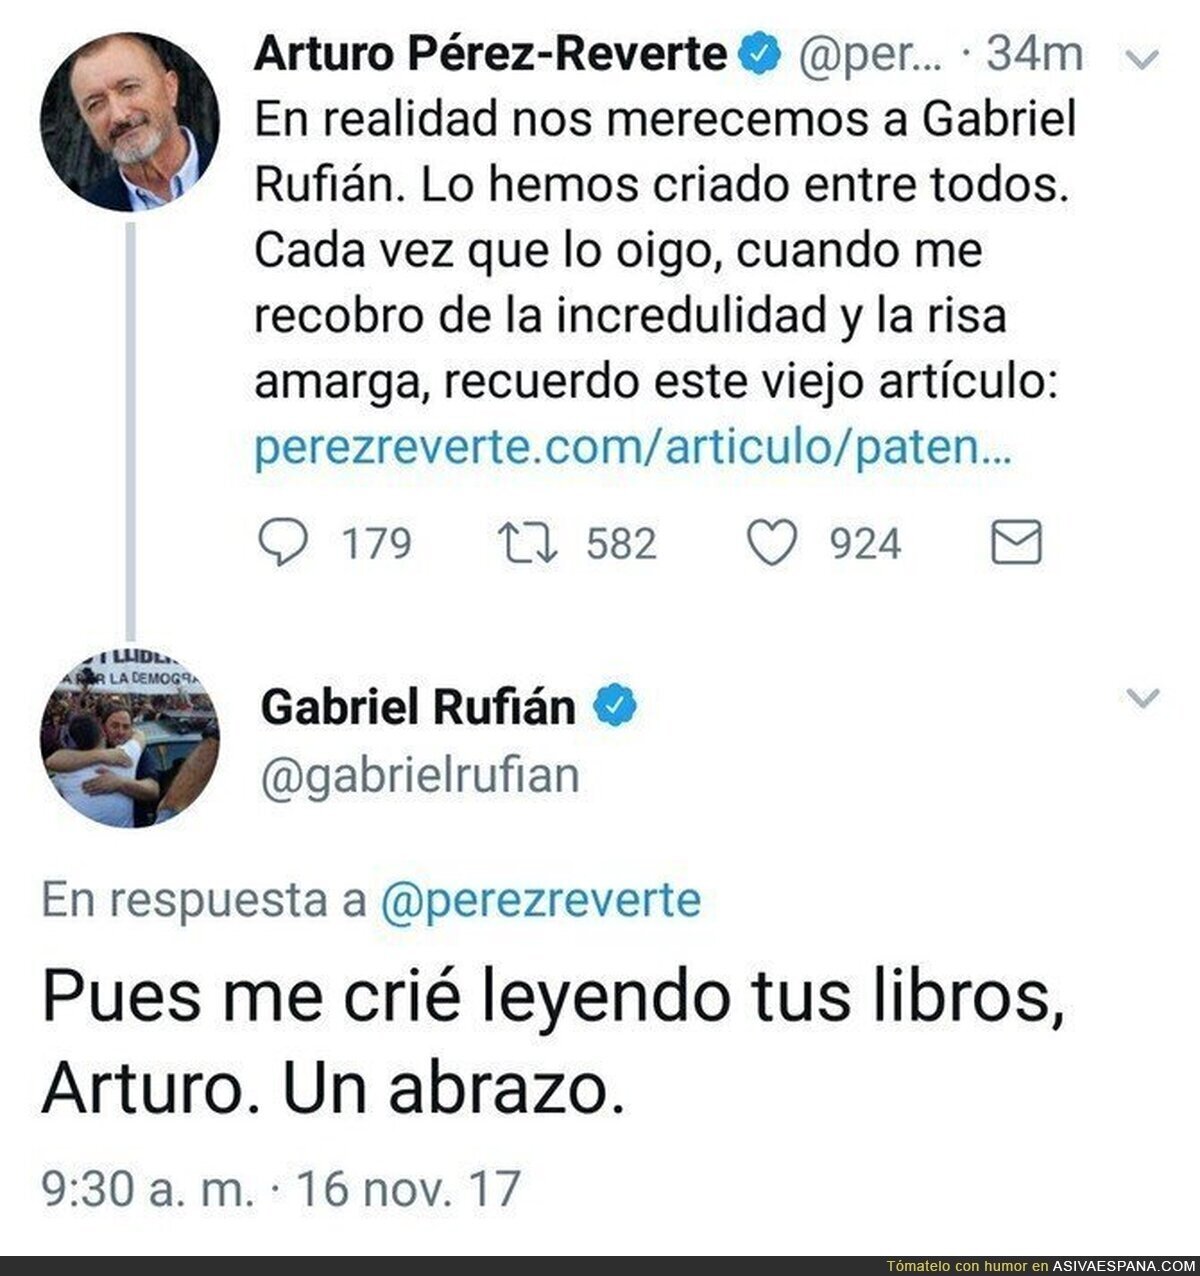 Arturo Pérez-Reverte ataca a Gabriel Rufián y éste se la devuelve de forma genial